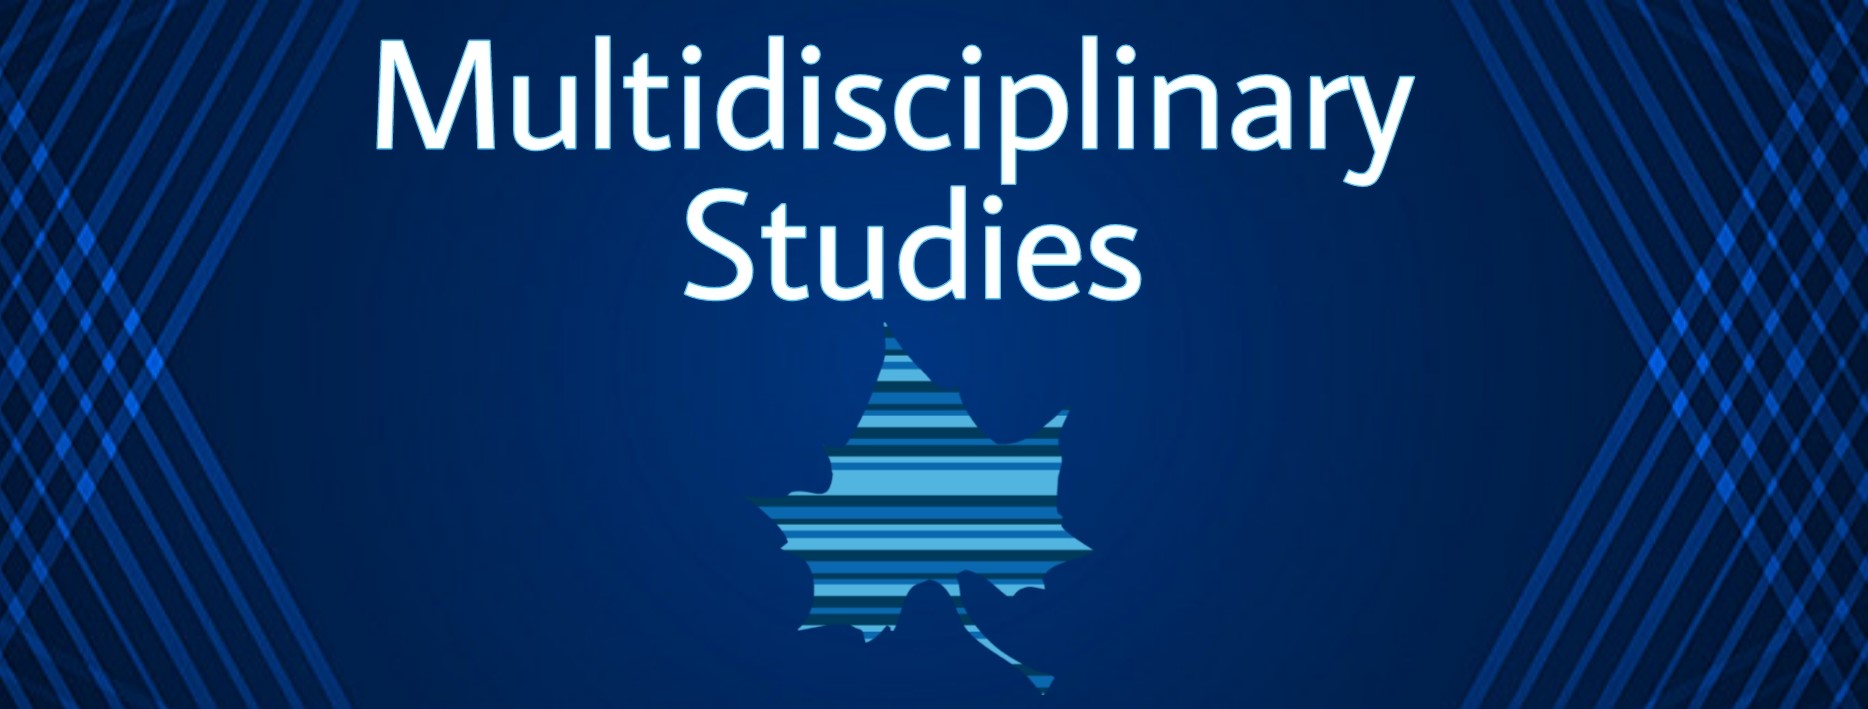 Multidisciplinary Studies